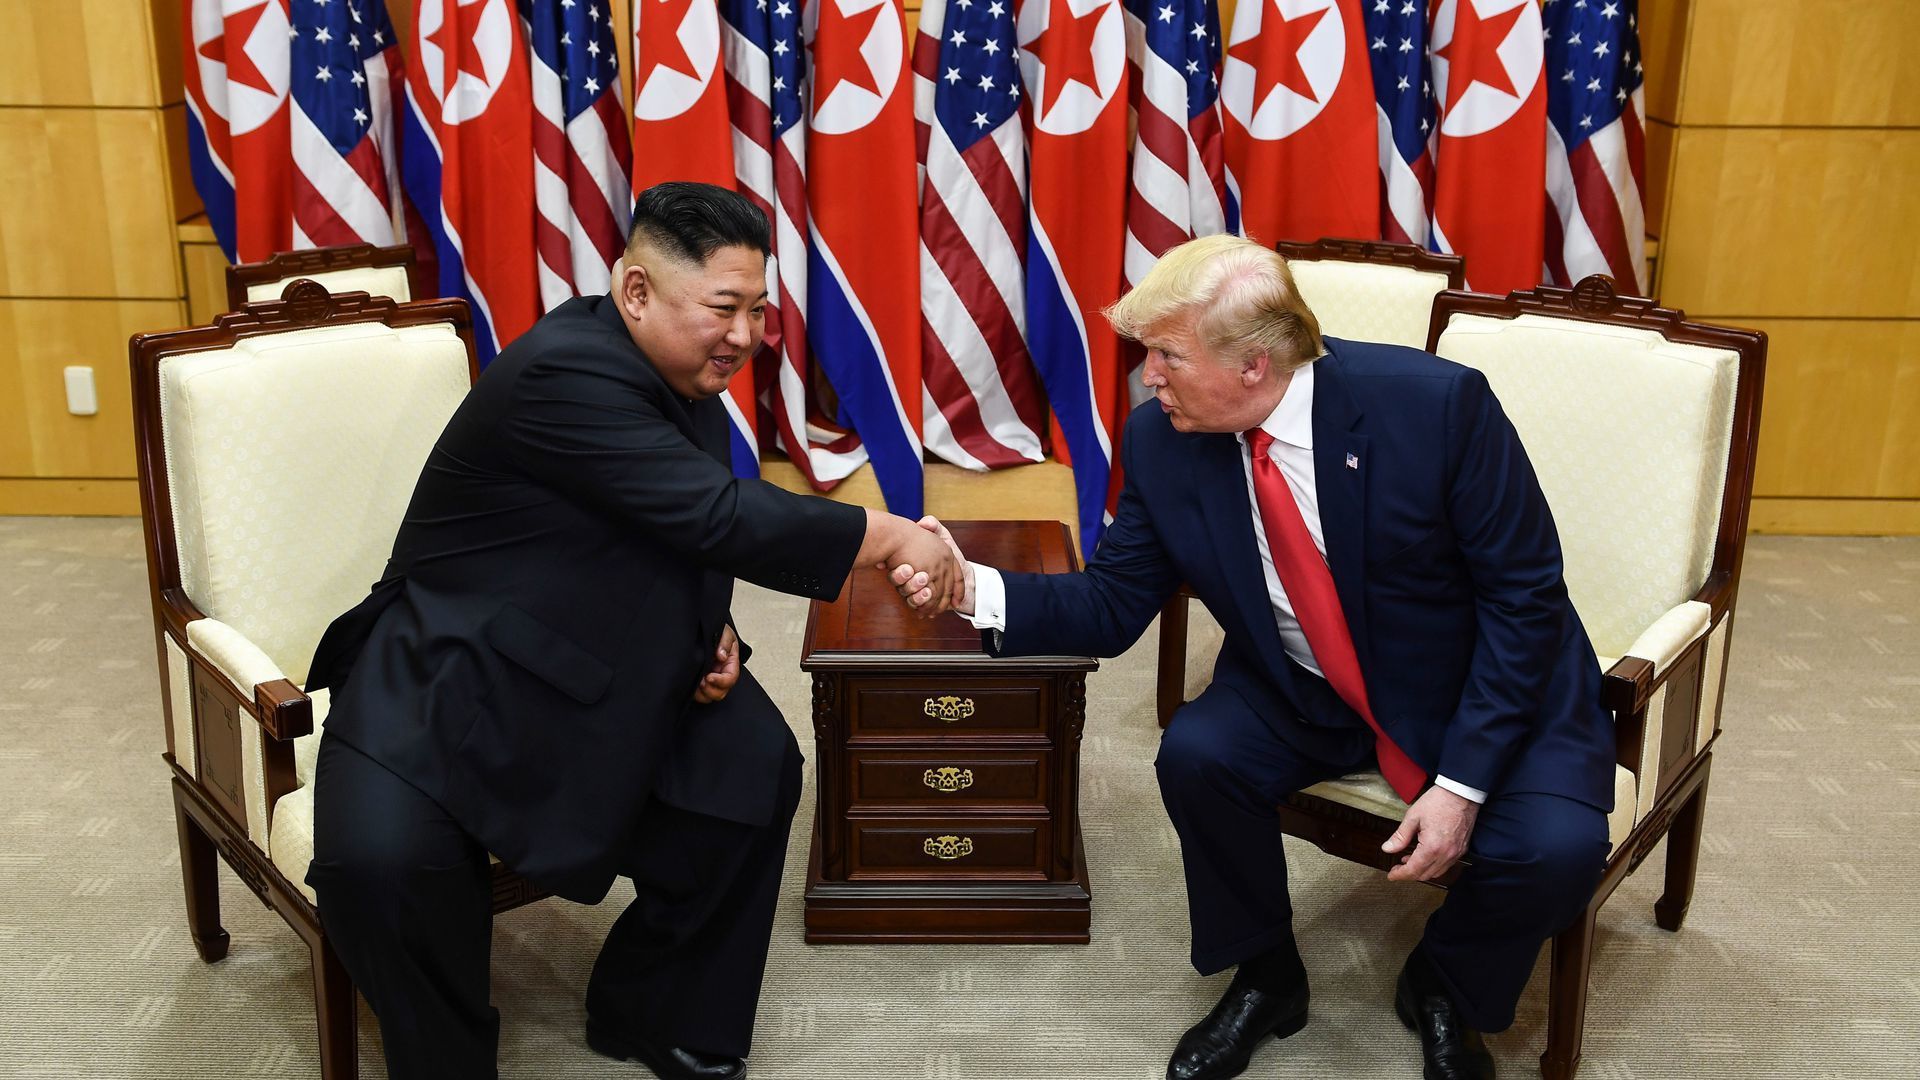 Triều Tiên ca ngợi cuộc gặp Trump - Kim là sự kiện “lịch sử”